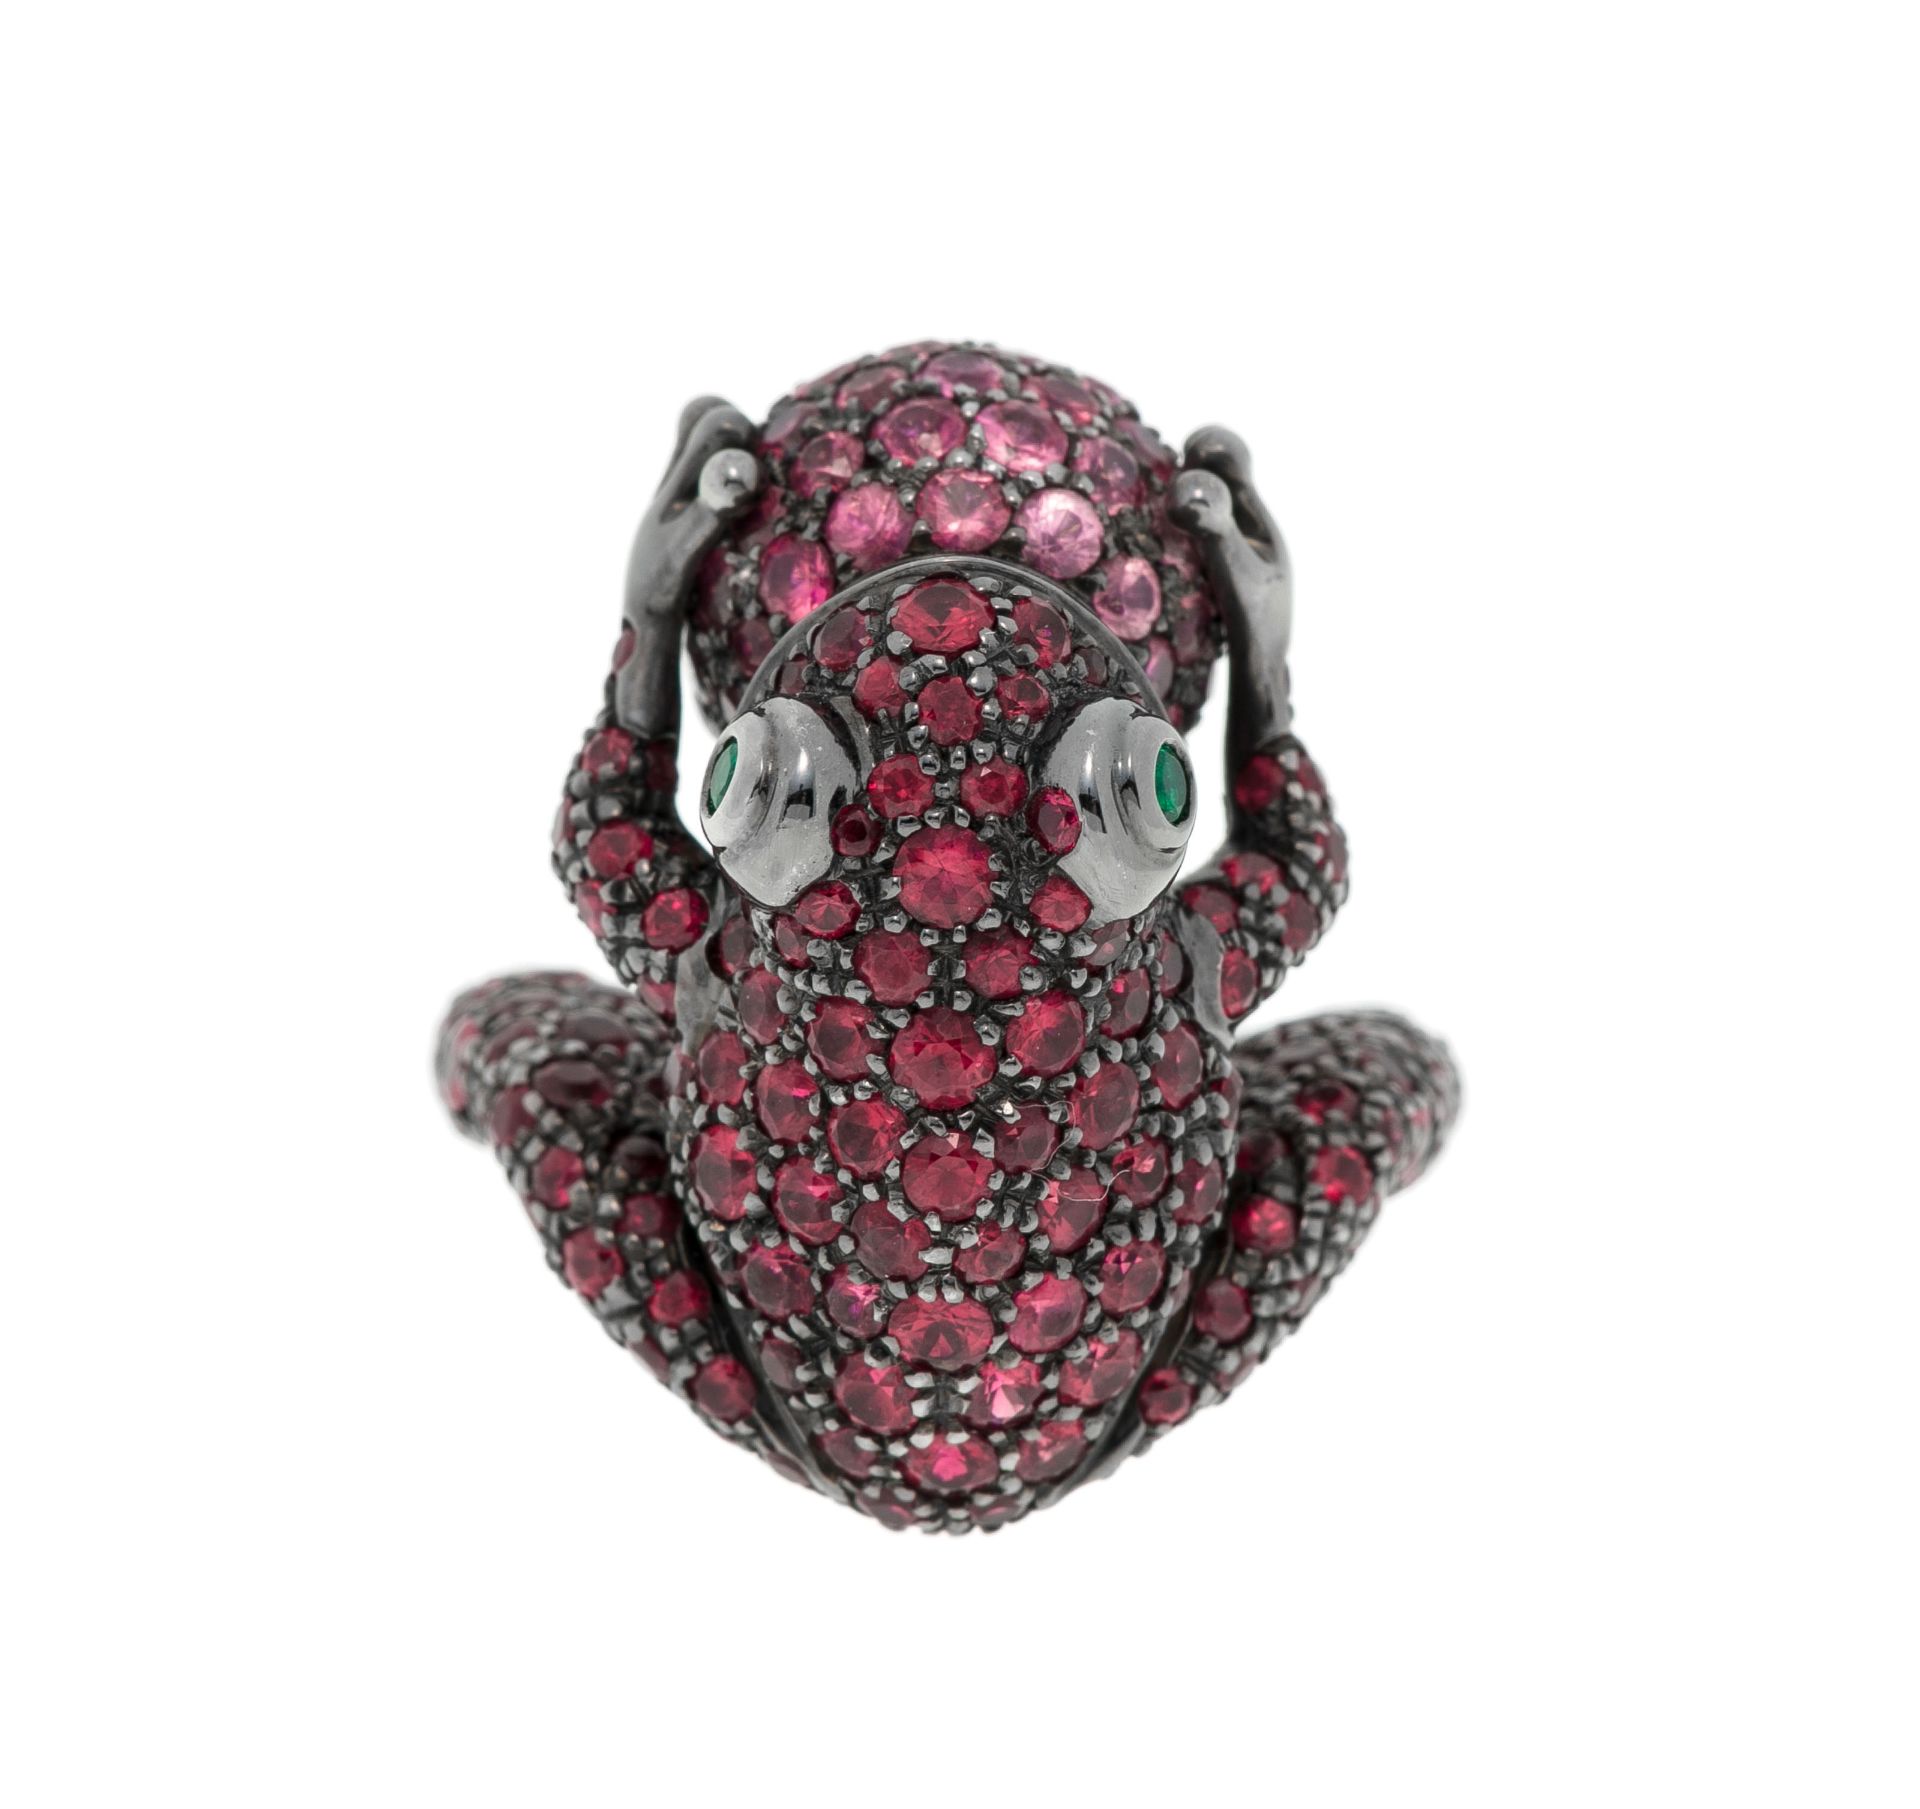 Boucheron, bague figurant une grenouille coassant en or 750 noirci entièrement pavée de saphirs rose - Image 5 of 5